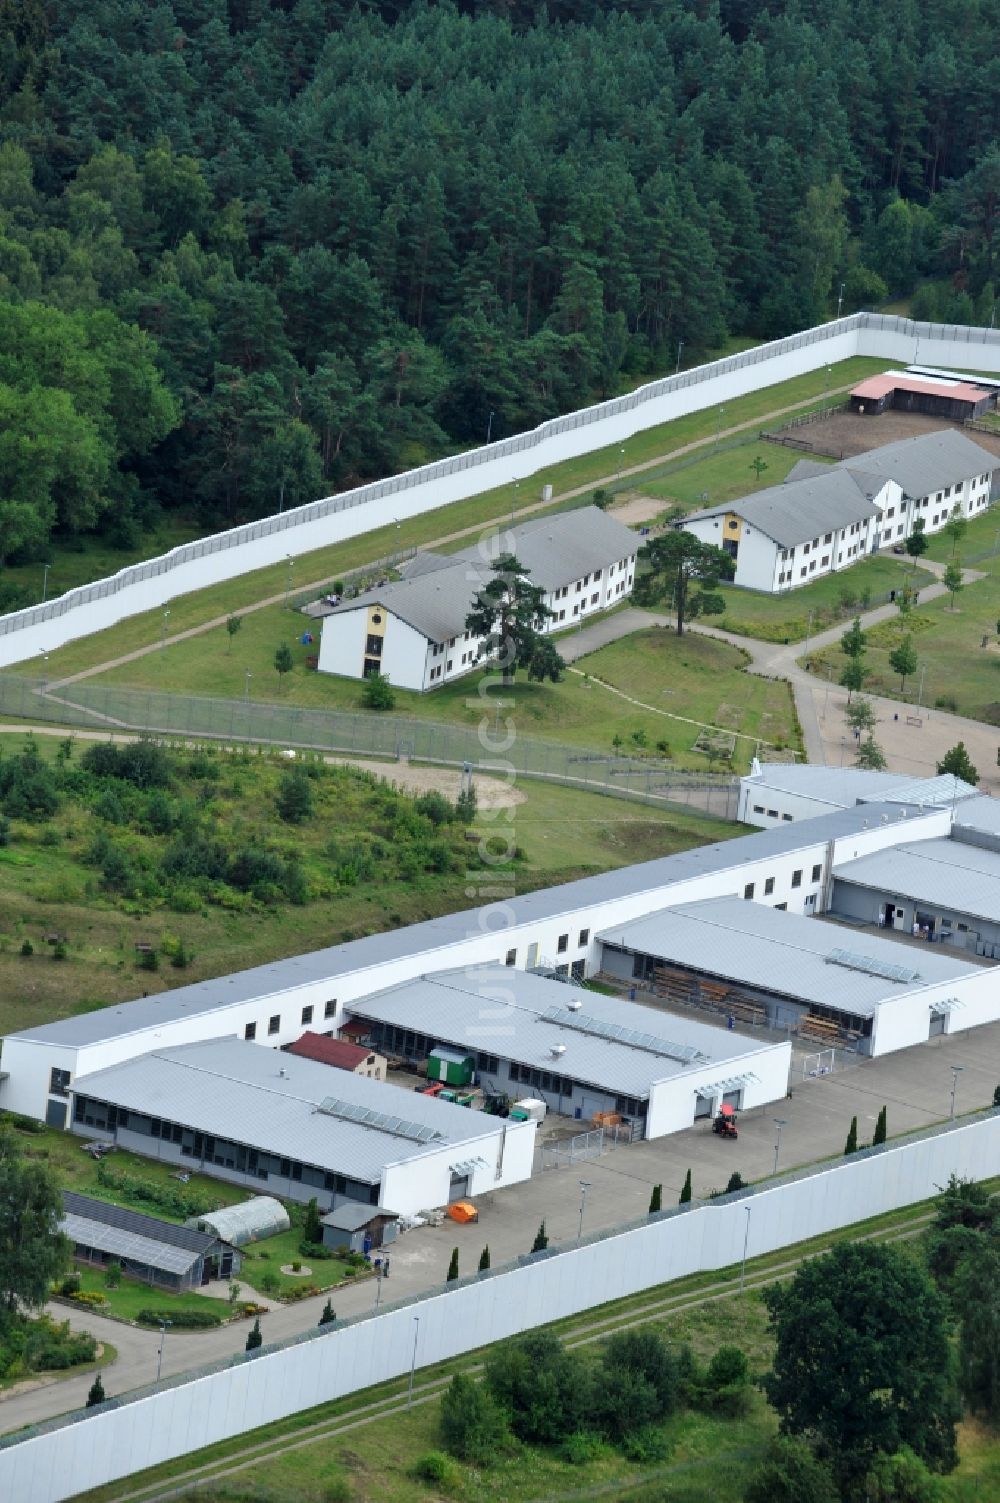 Luftaufnahme Neustrelitz - Justizvollzugsanstalt JVA Am Kaulksee in Neustrelitz im Bundesland Mecklenburg-Vorpommern, Deutschland